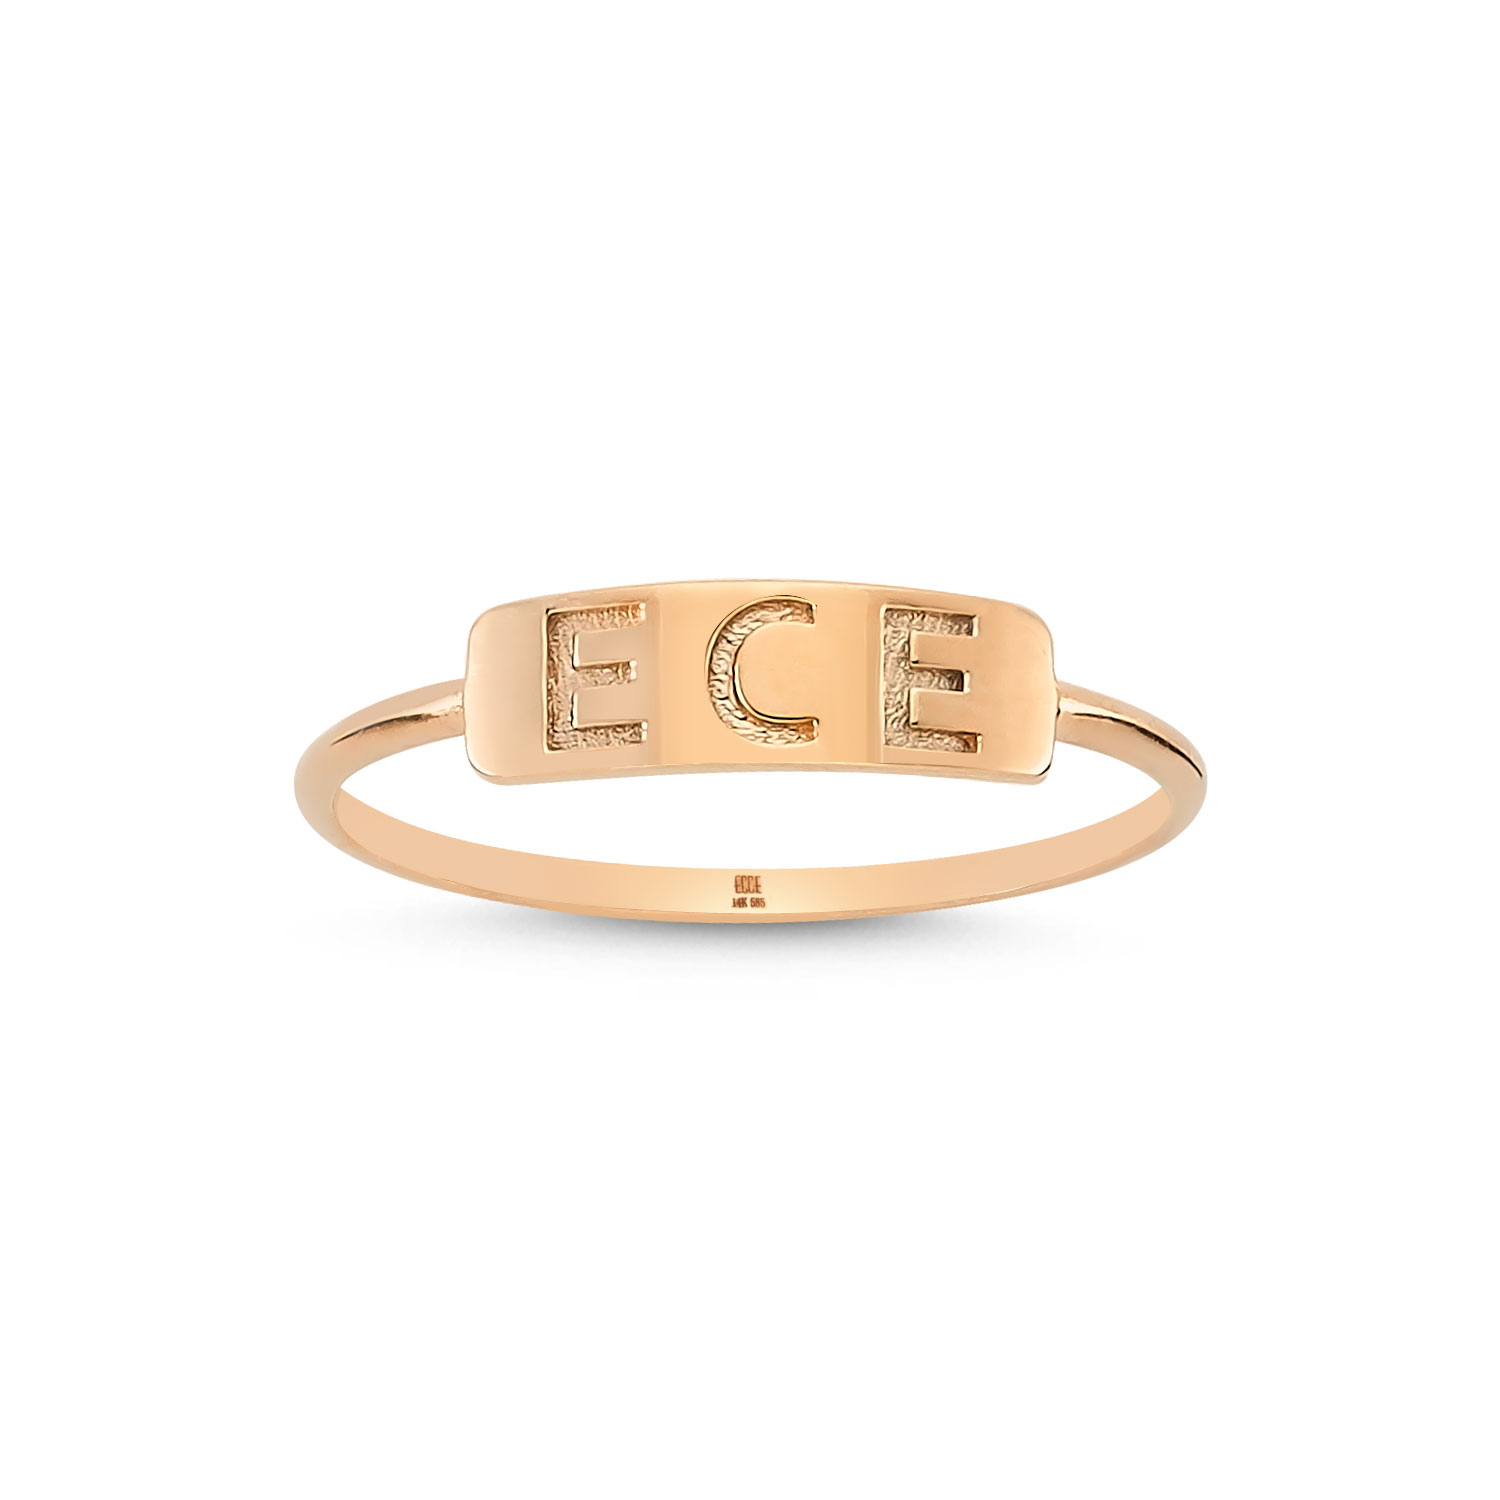 ECCE Name Tag Ring